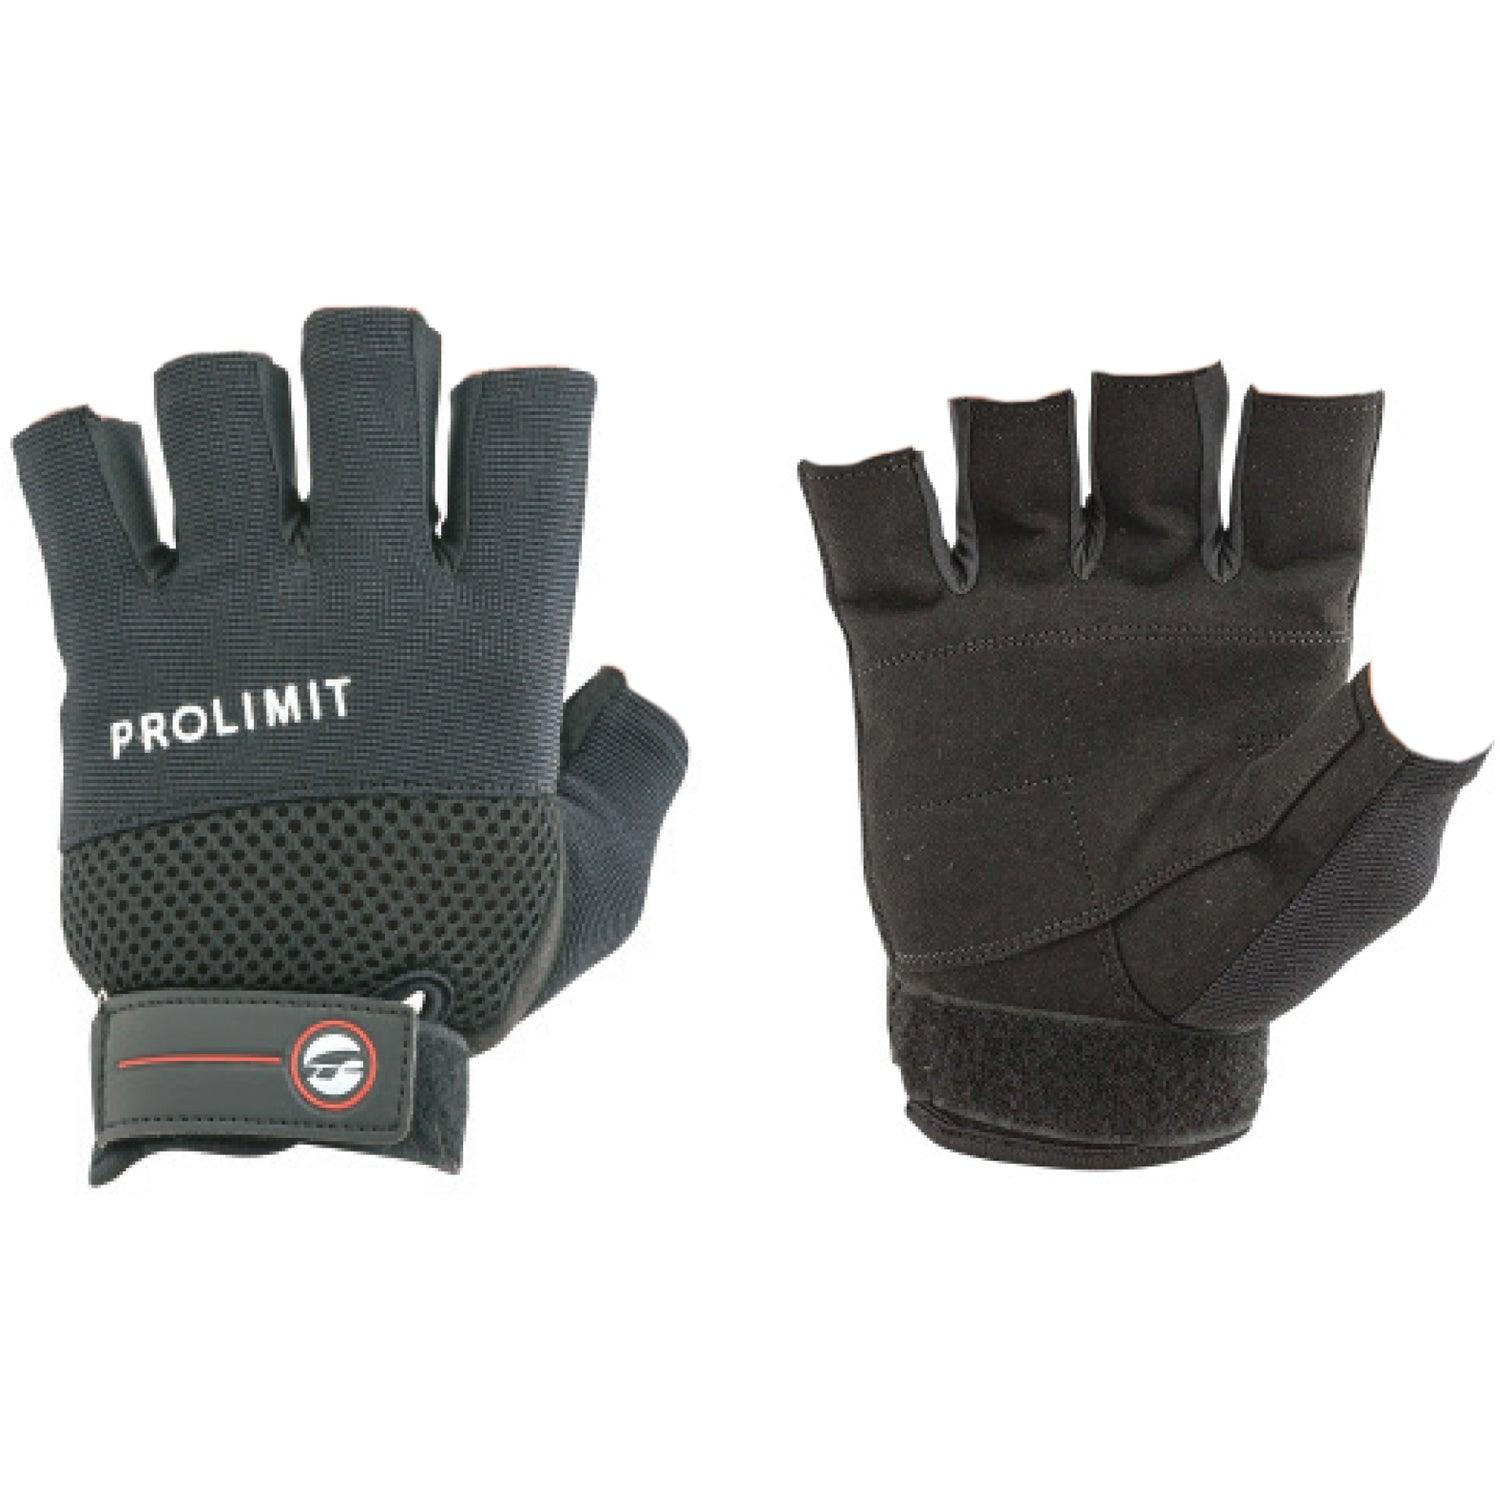 Prolimit H2O summer glove